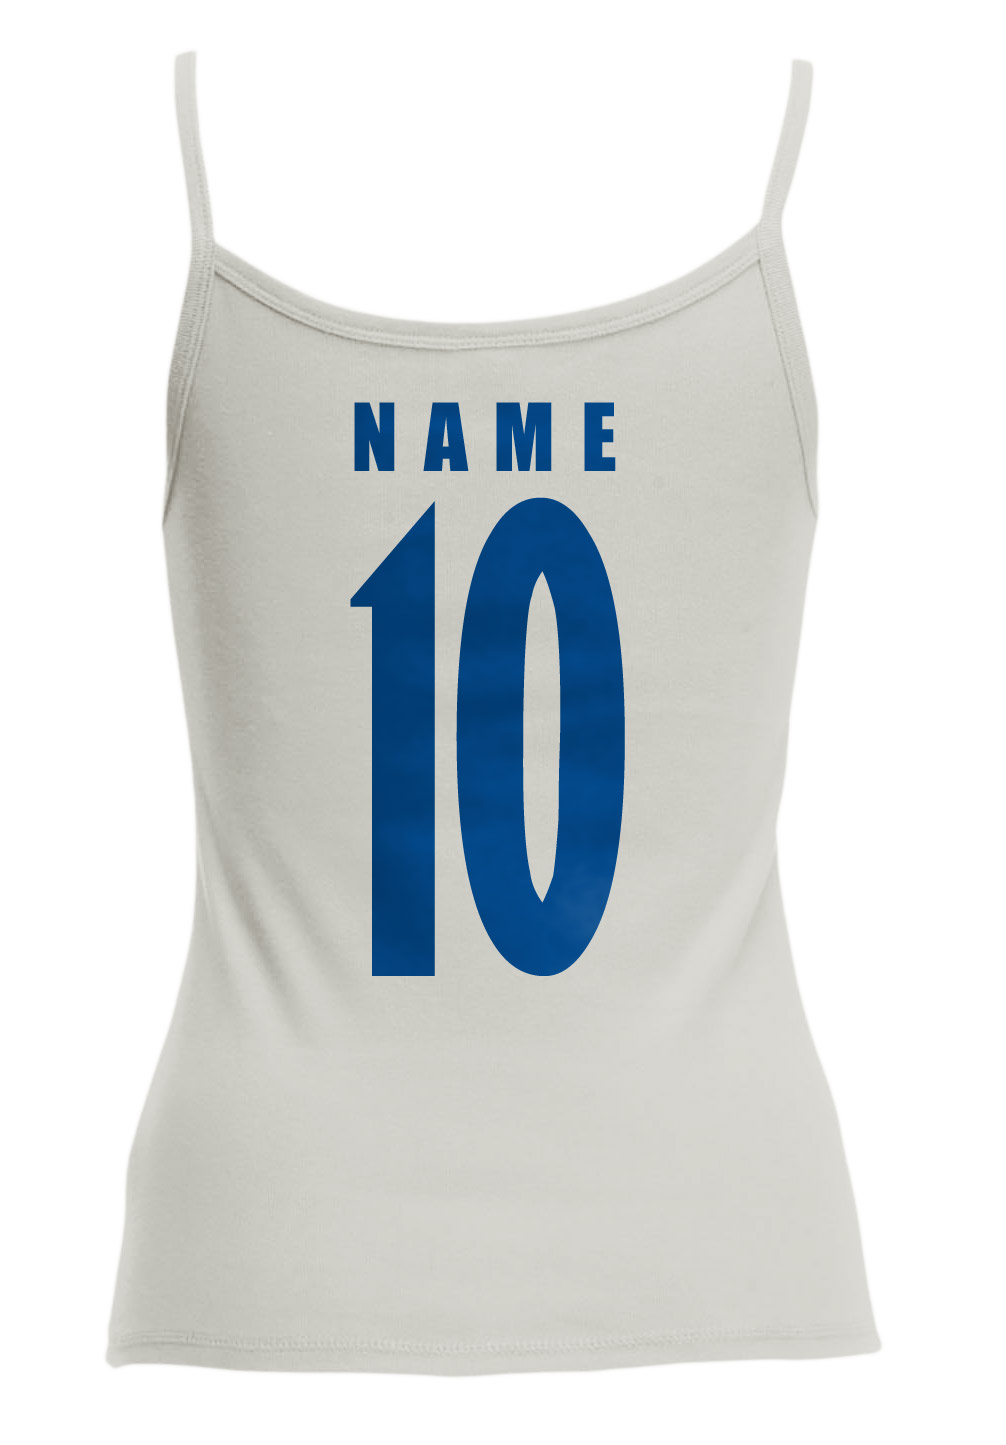 Uruguay Damen Trikot Fanshirt Top Shirt WM 2018 Name Nummer 